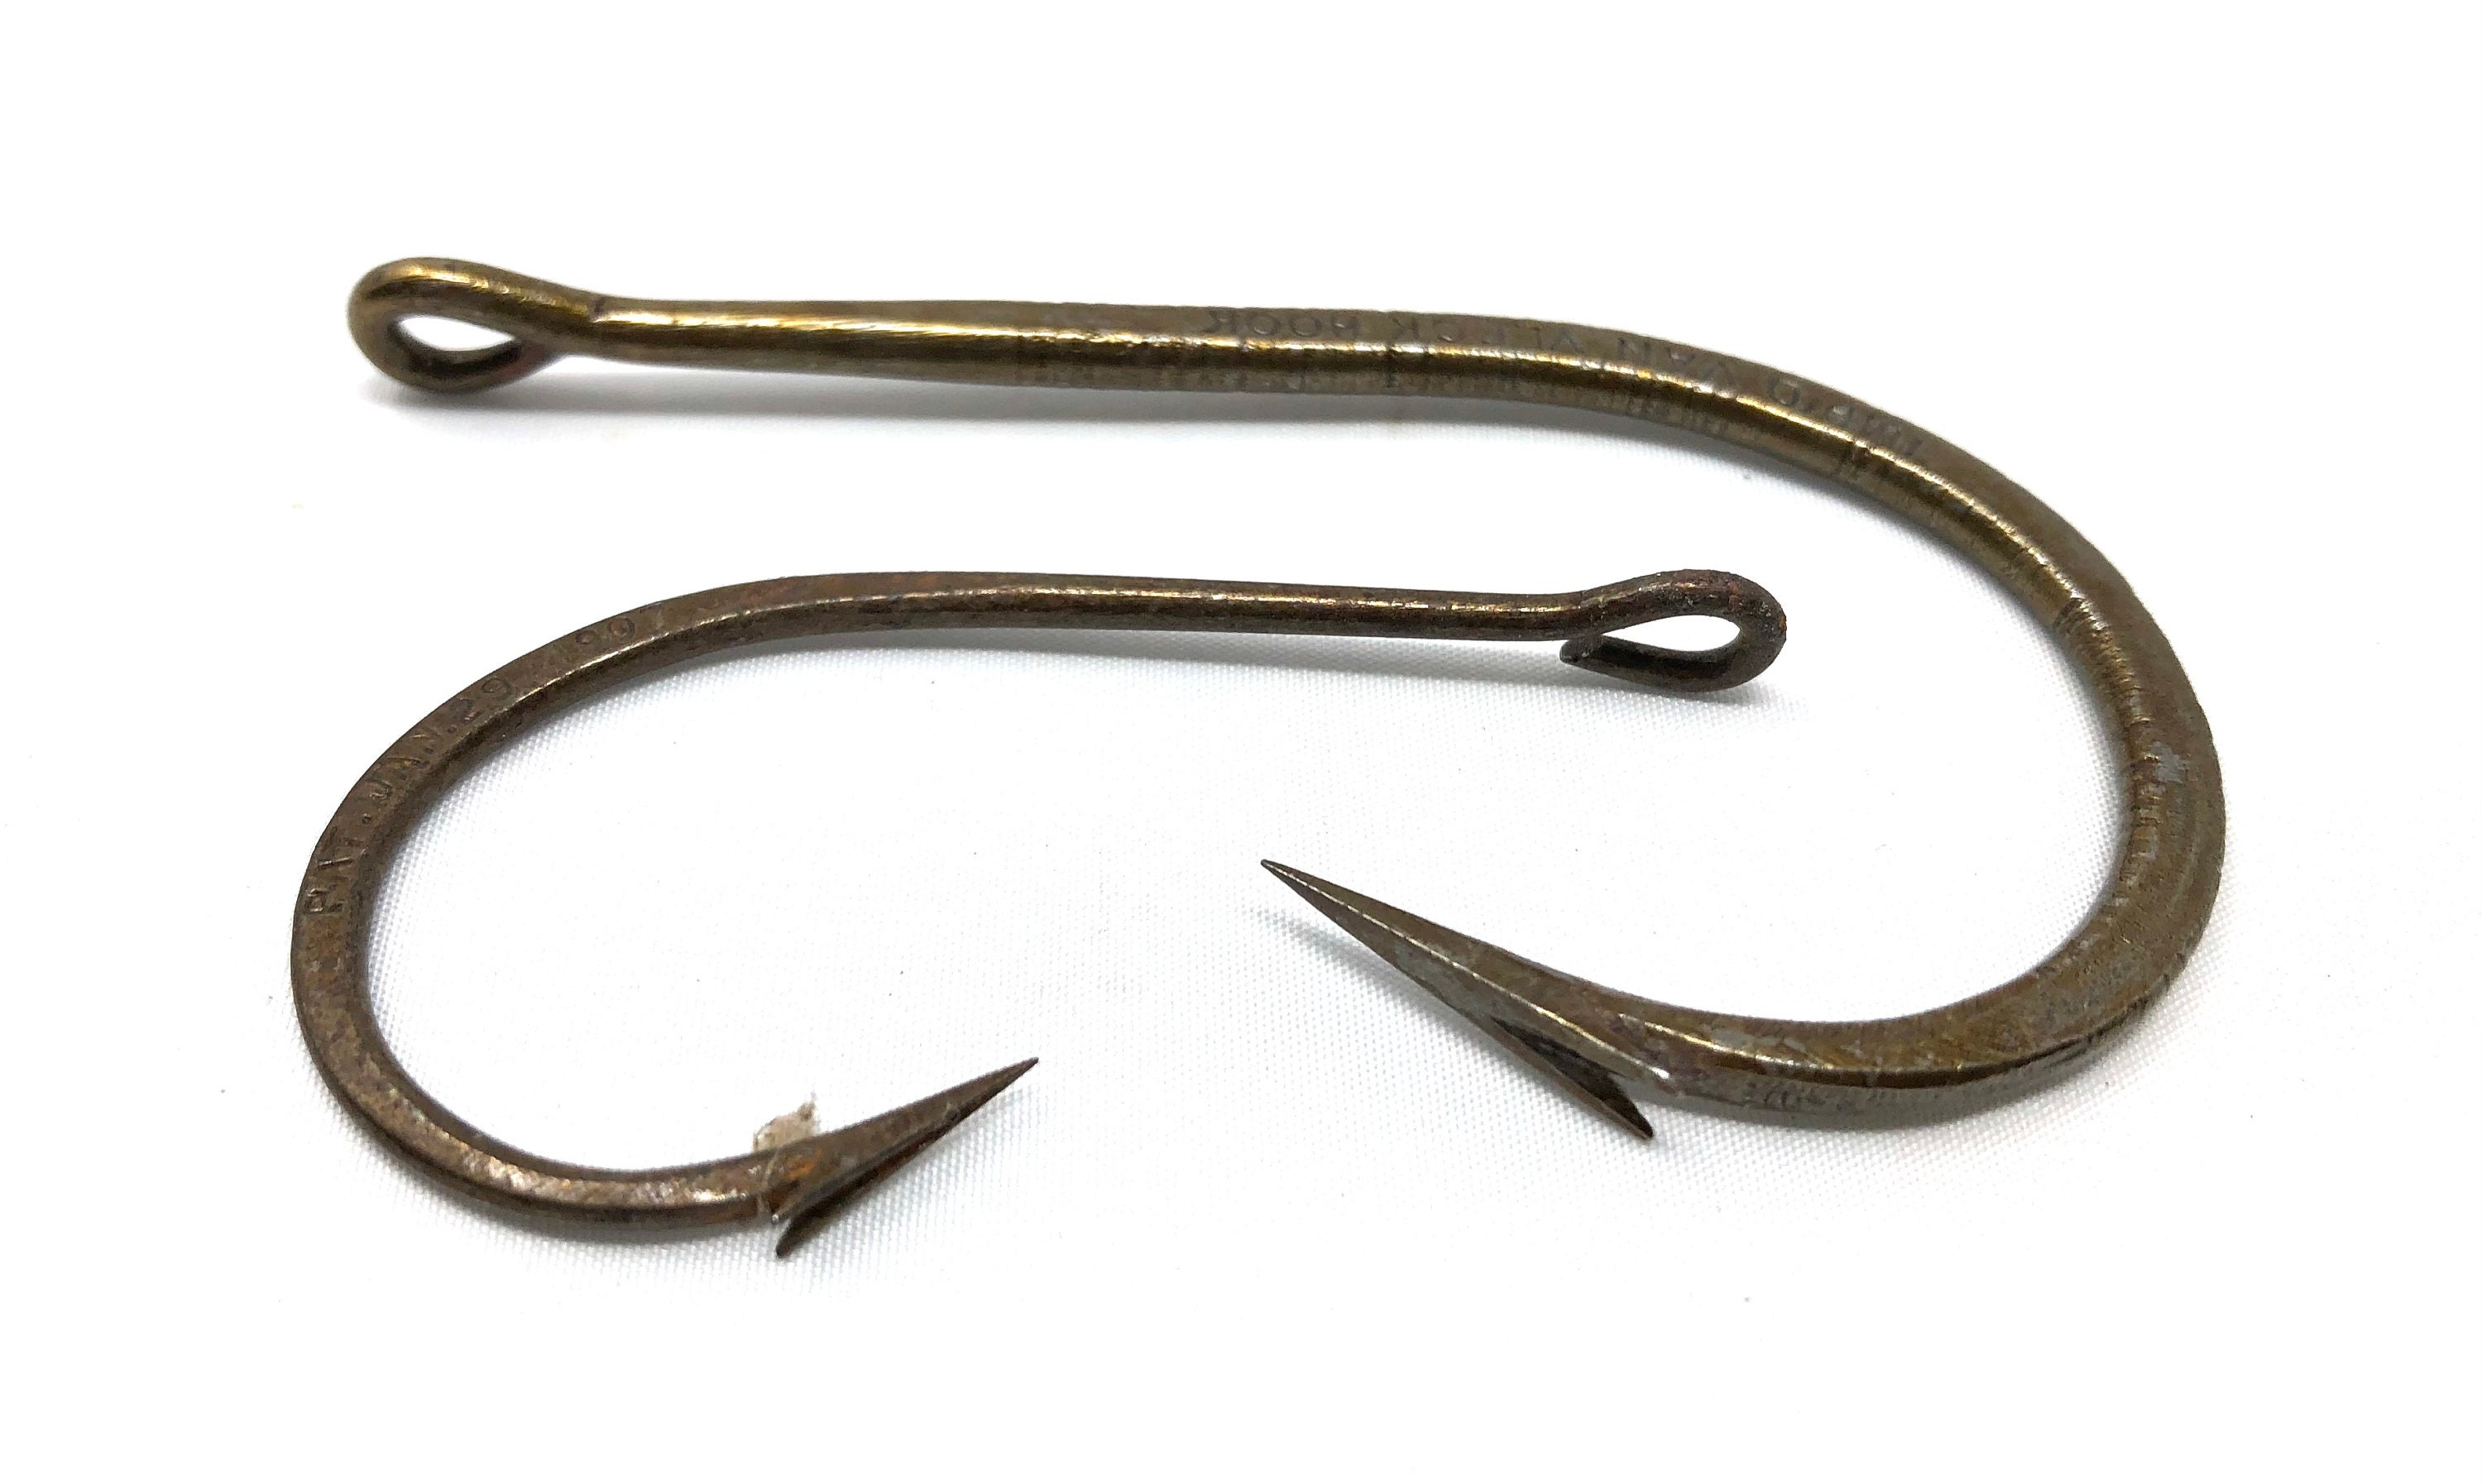 2 Vintage Sport Fishing Hooks / Antique Improved Van Vleck Fish